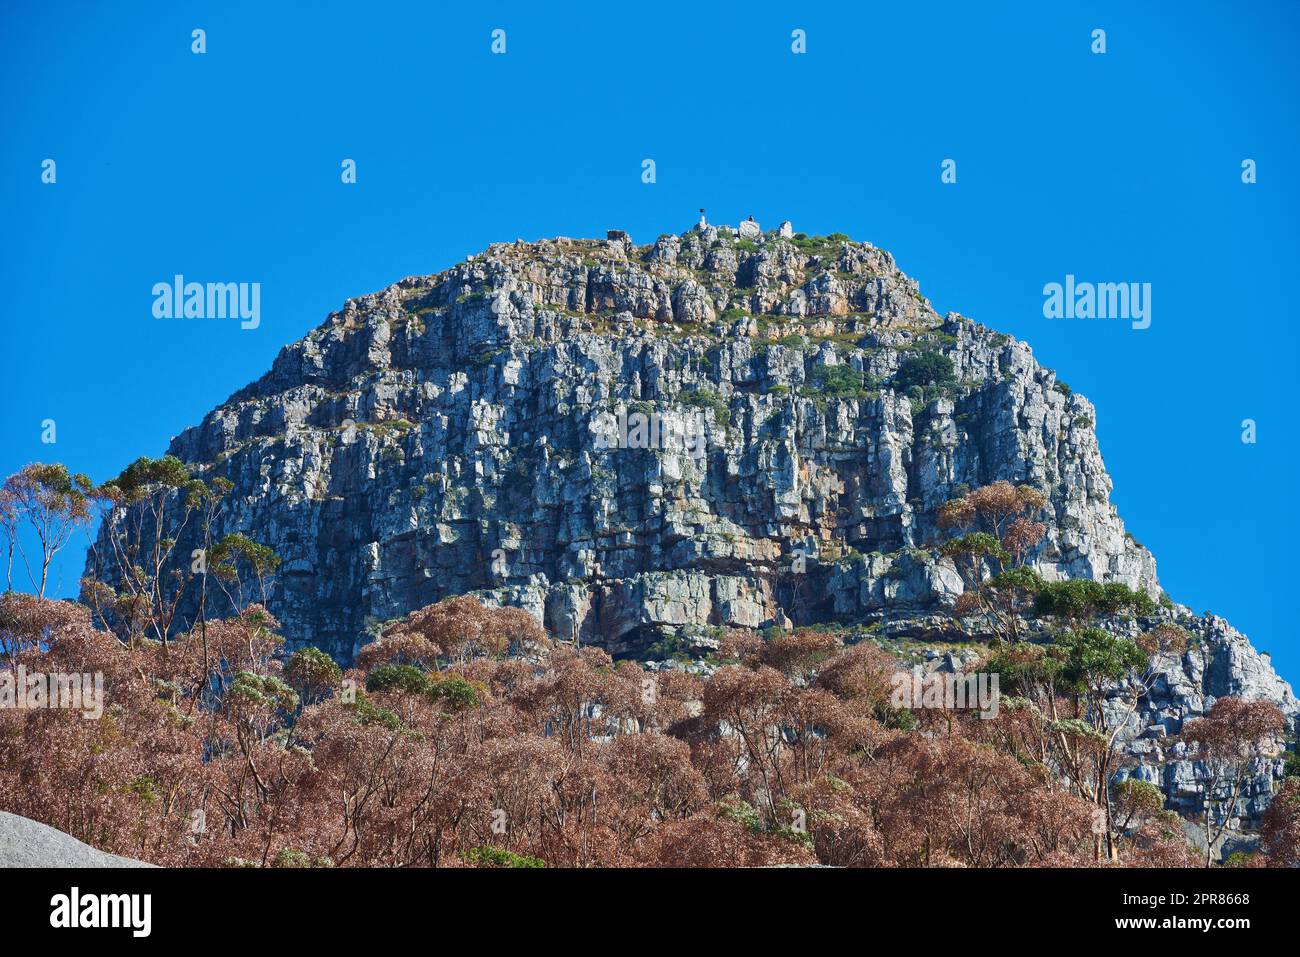 Una grande montagna con alberi marroni e verdi su uno sfondo di cielo azzurro e copyspace. Enorme terreno roccioso perfetto per escursioni, arrampicate su roccia o viste panoramiche di città del Capo all'aperto Foto Stock